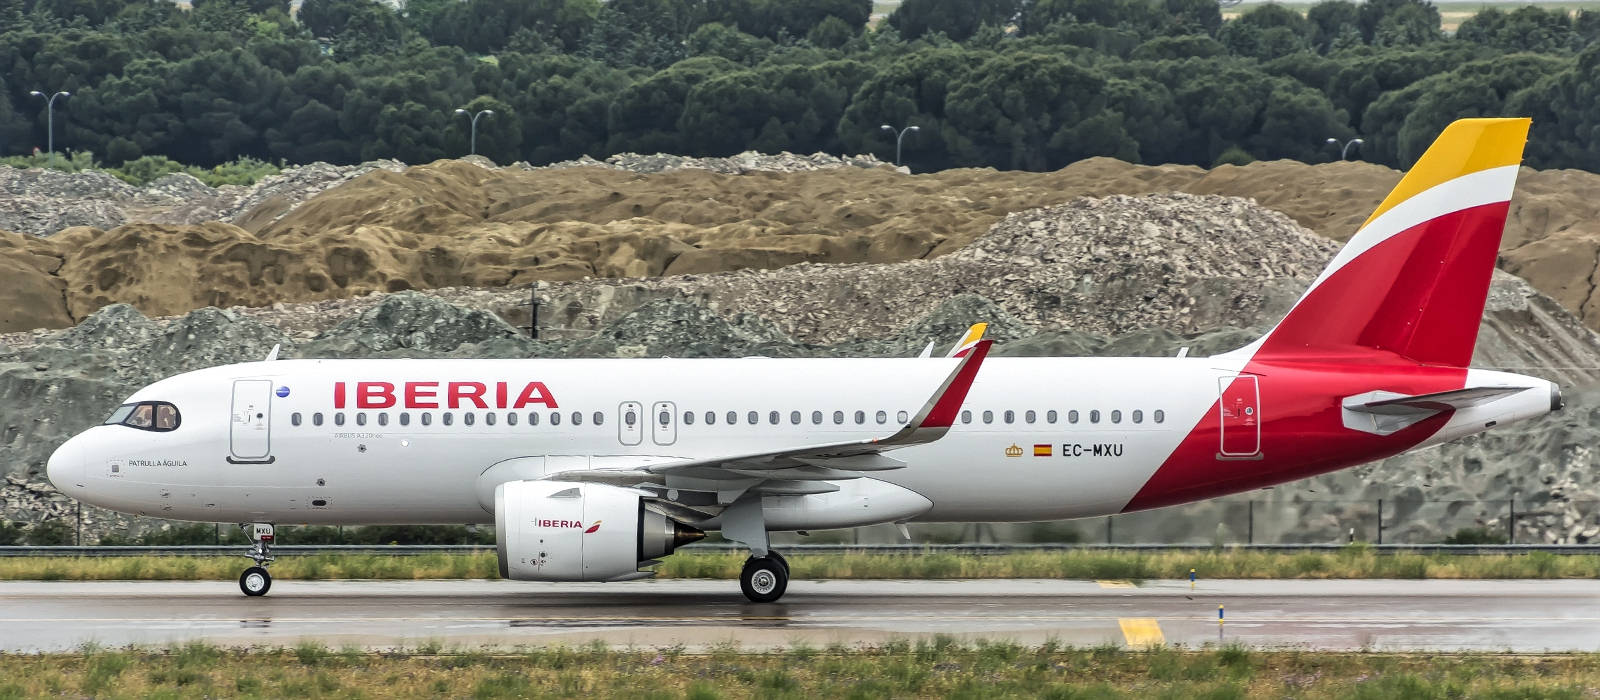 Aviónde Iberia Airlines Vista Lateral En La Pista De Despegue Fondo de pantalla